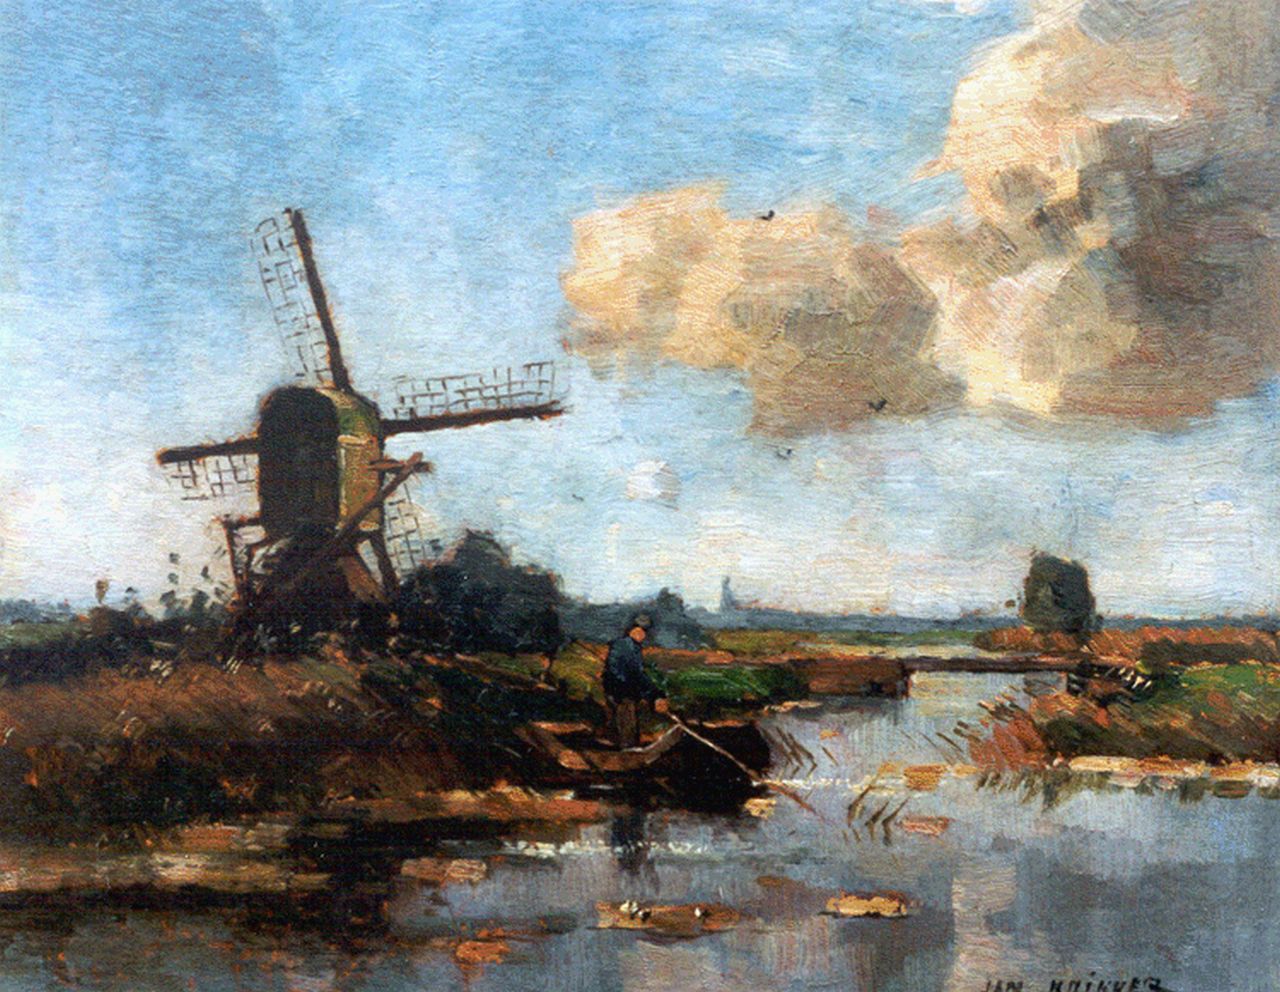 Knikker sr. J.S.  | 'Jan' Simon Knikker sr., A fisherman in a polder landscape, Öl auf Malereifaser 25,3 x 28,1 cm, signed l.r.